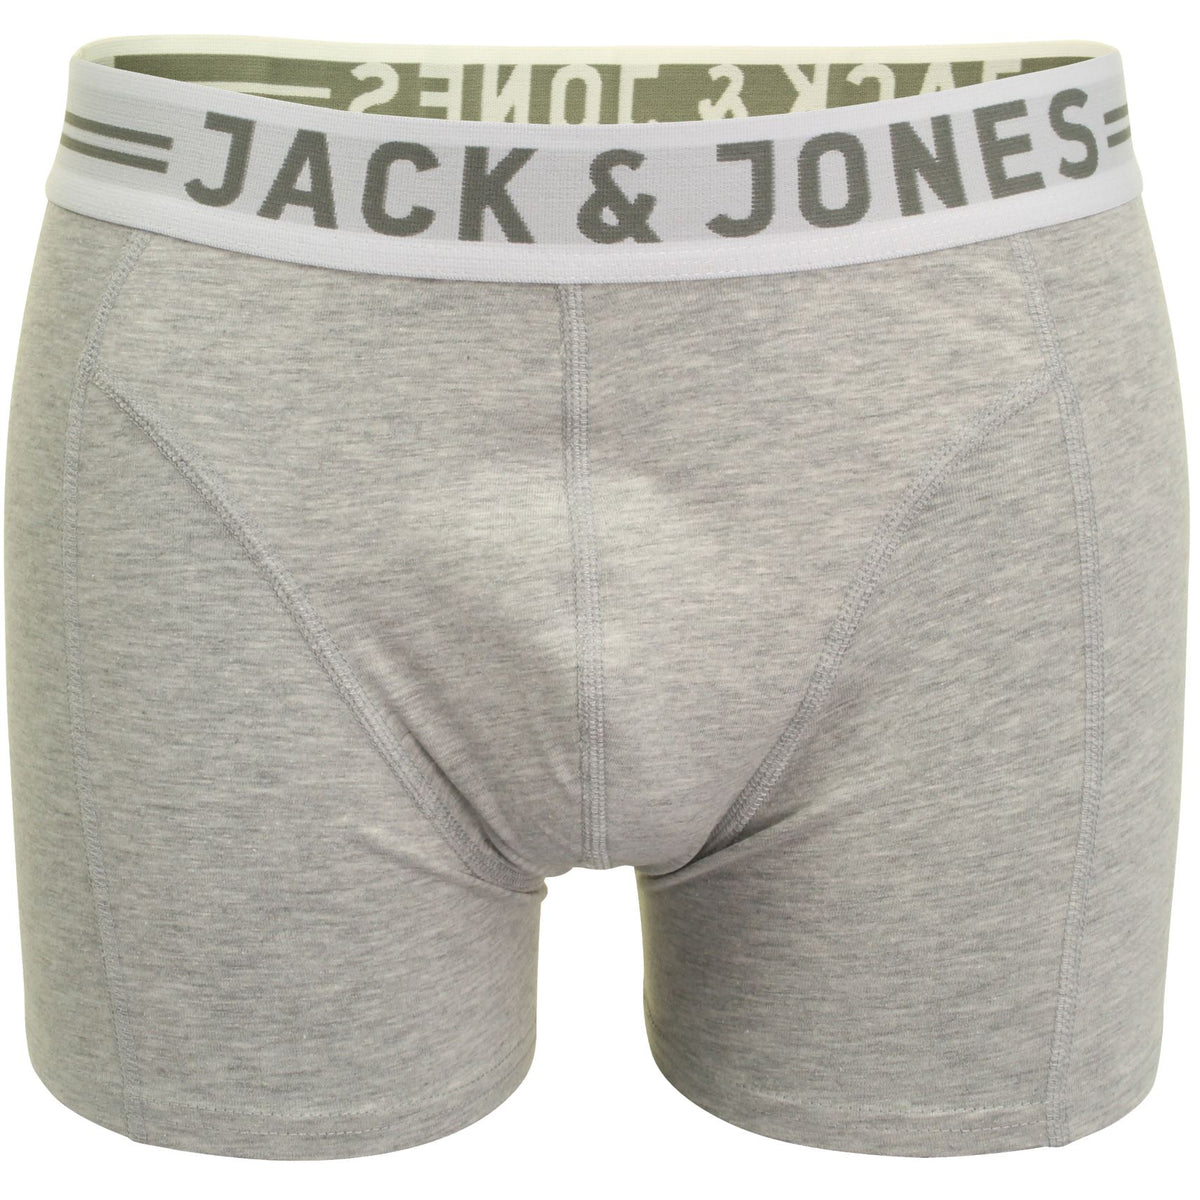 Jack & Jones 'Sense' Mens Boxer Shorts/ Trunks (Light Grey Melange, XXL), 01, 12075392, Light Grey Melange